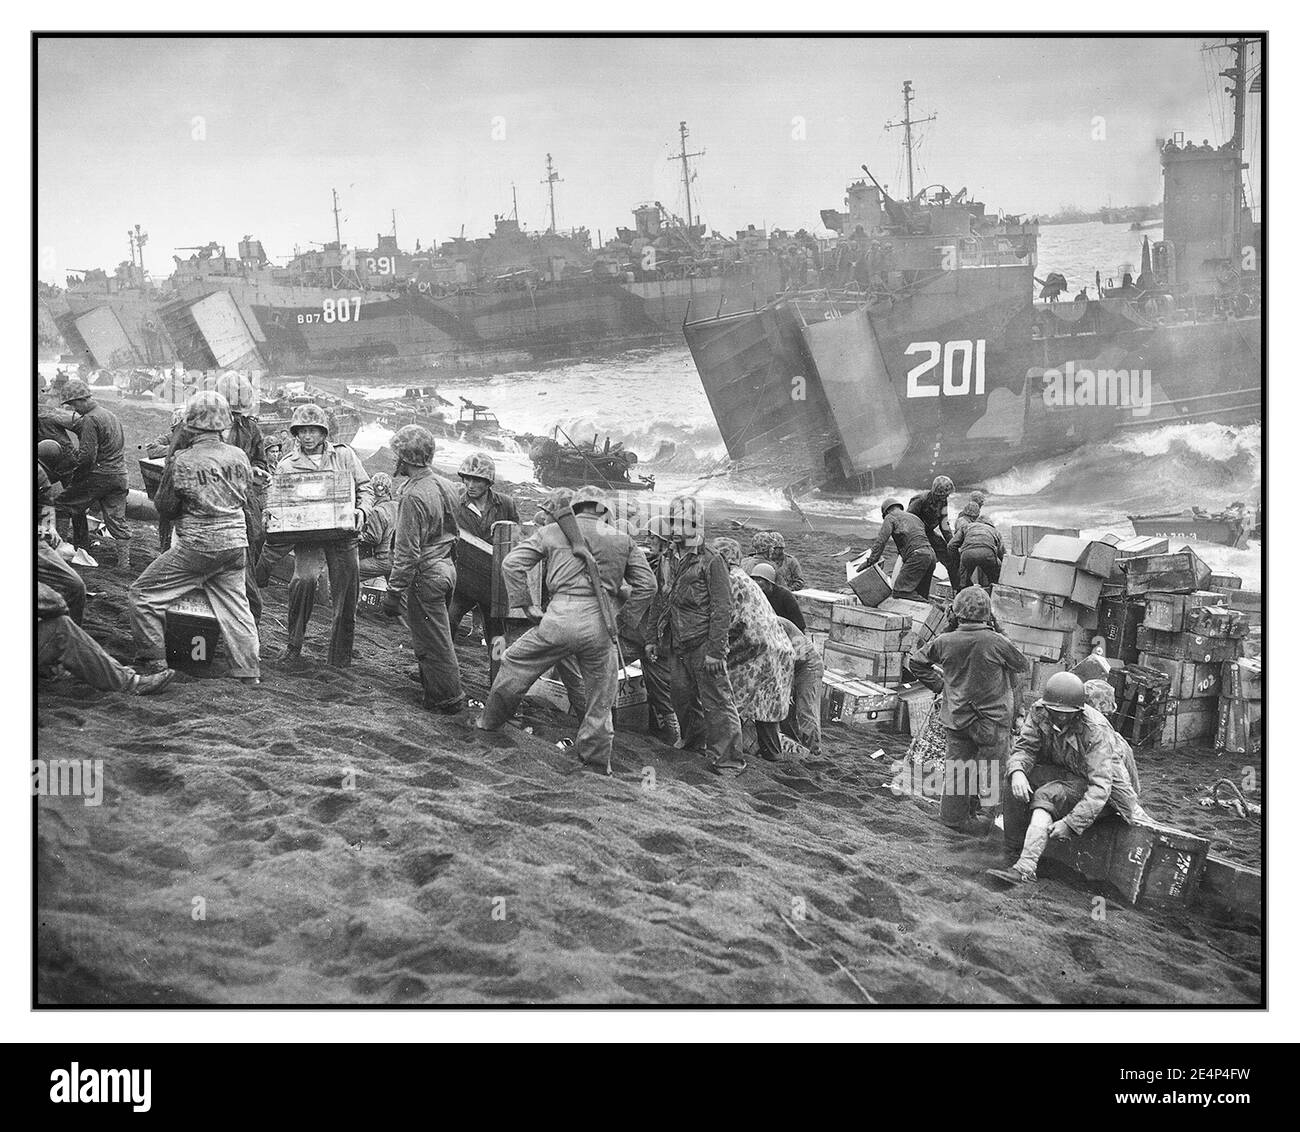 WW2 Iwo Jima Supply Beachhead World war II: Iwo Jima U.S. Coast Guard und US Navy Schiffe landen auf dem Marine Beachhead in Iwo Jima, Japan der Meeresnebel, der einer sehr realen Landung eine filmische Qualität verleiht Februar 1945. Zweiter Weltkrieg Stockfoto